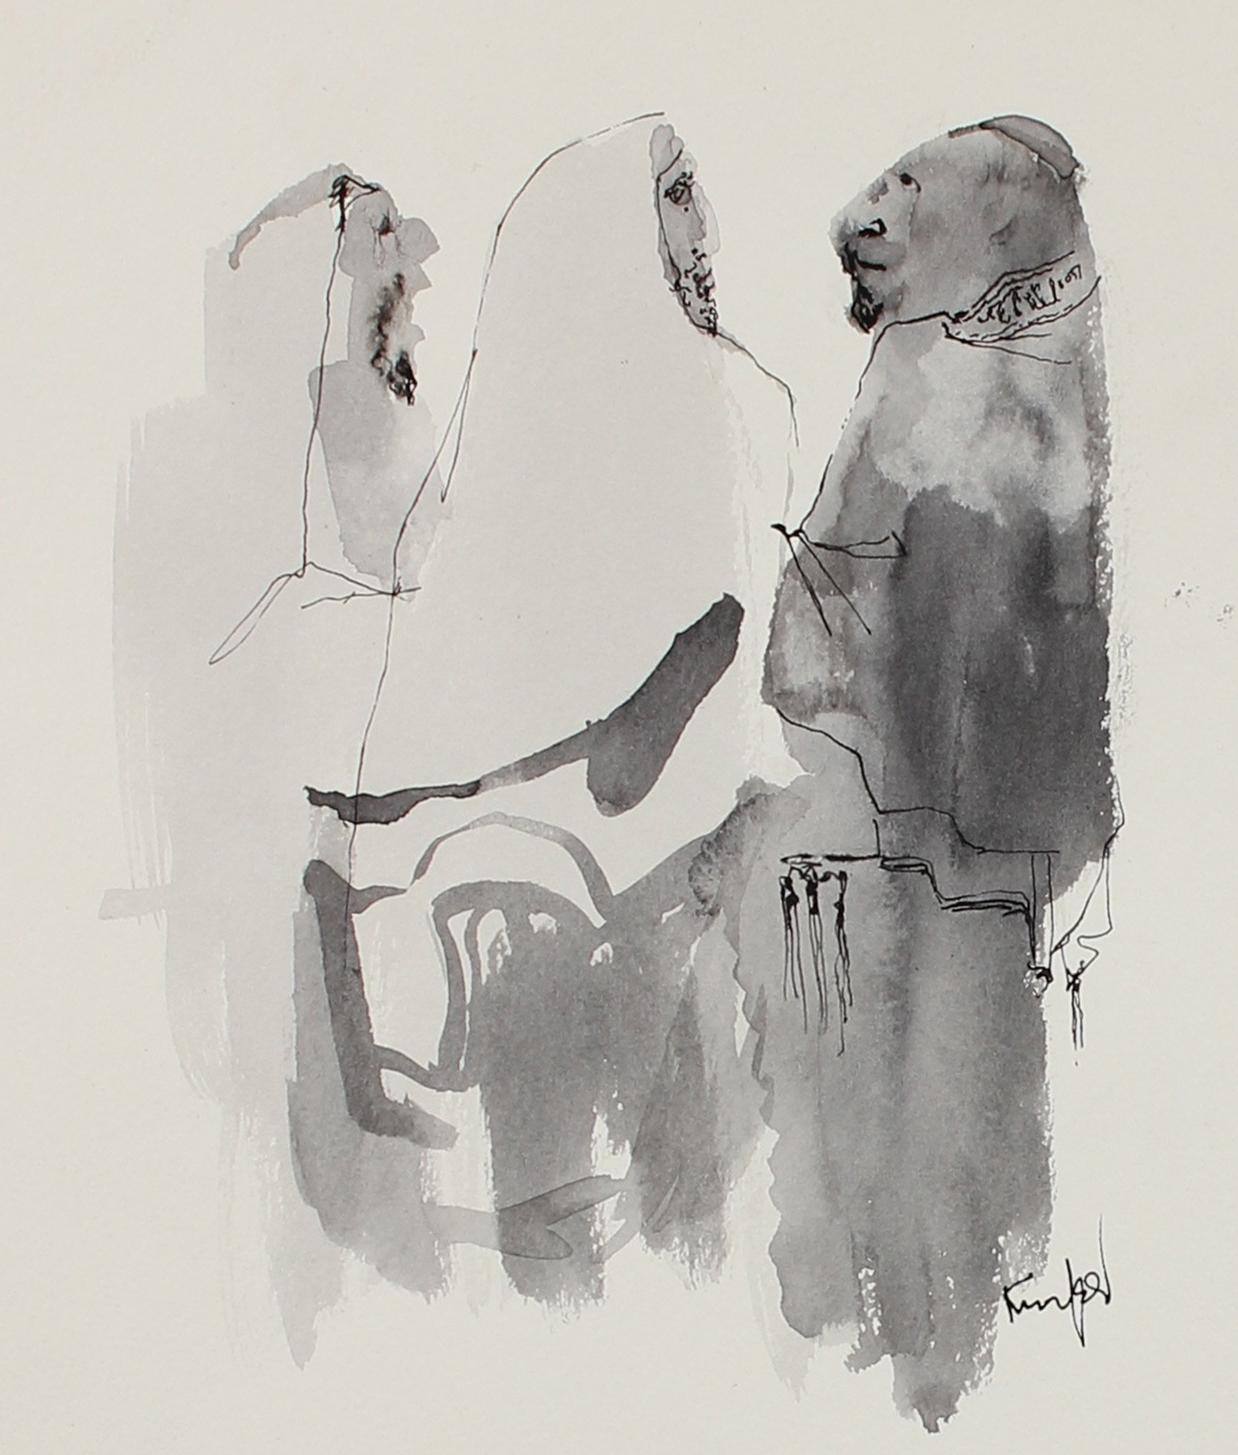 1960s-70s Drawing of Multiple People Scenes in Ink - Art by Morris Kronfeld